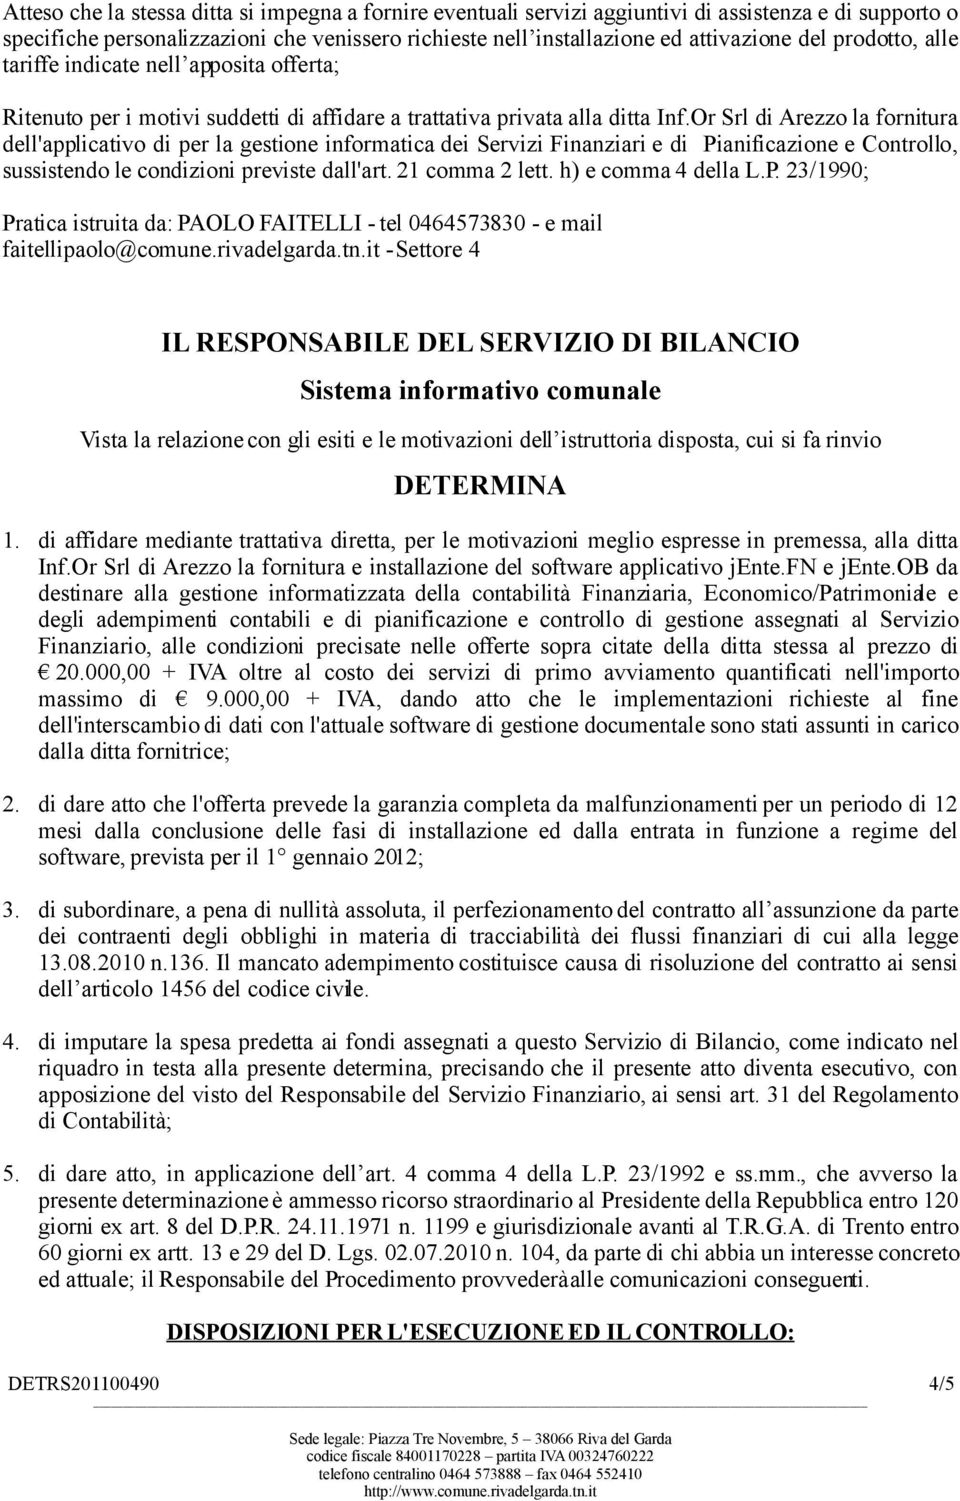 Or Srl di Arezzo la fornitura dell'applicativo di per la gestione informatica dei Servizi Finanziari e di Pianificazione e Controllo, sussistendo le condizioni previste dall'art. 21 comma 2 lett.